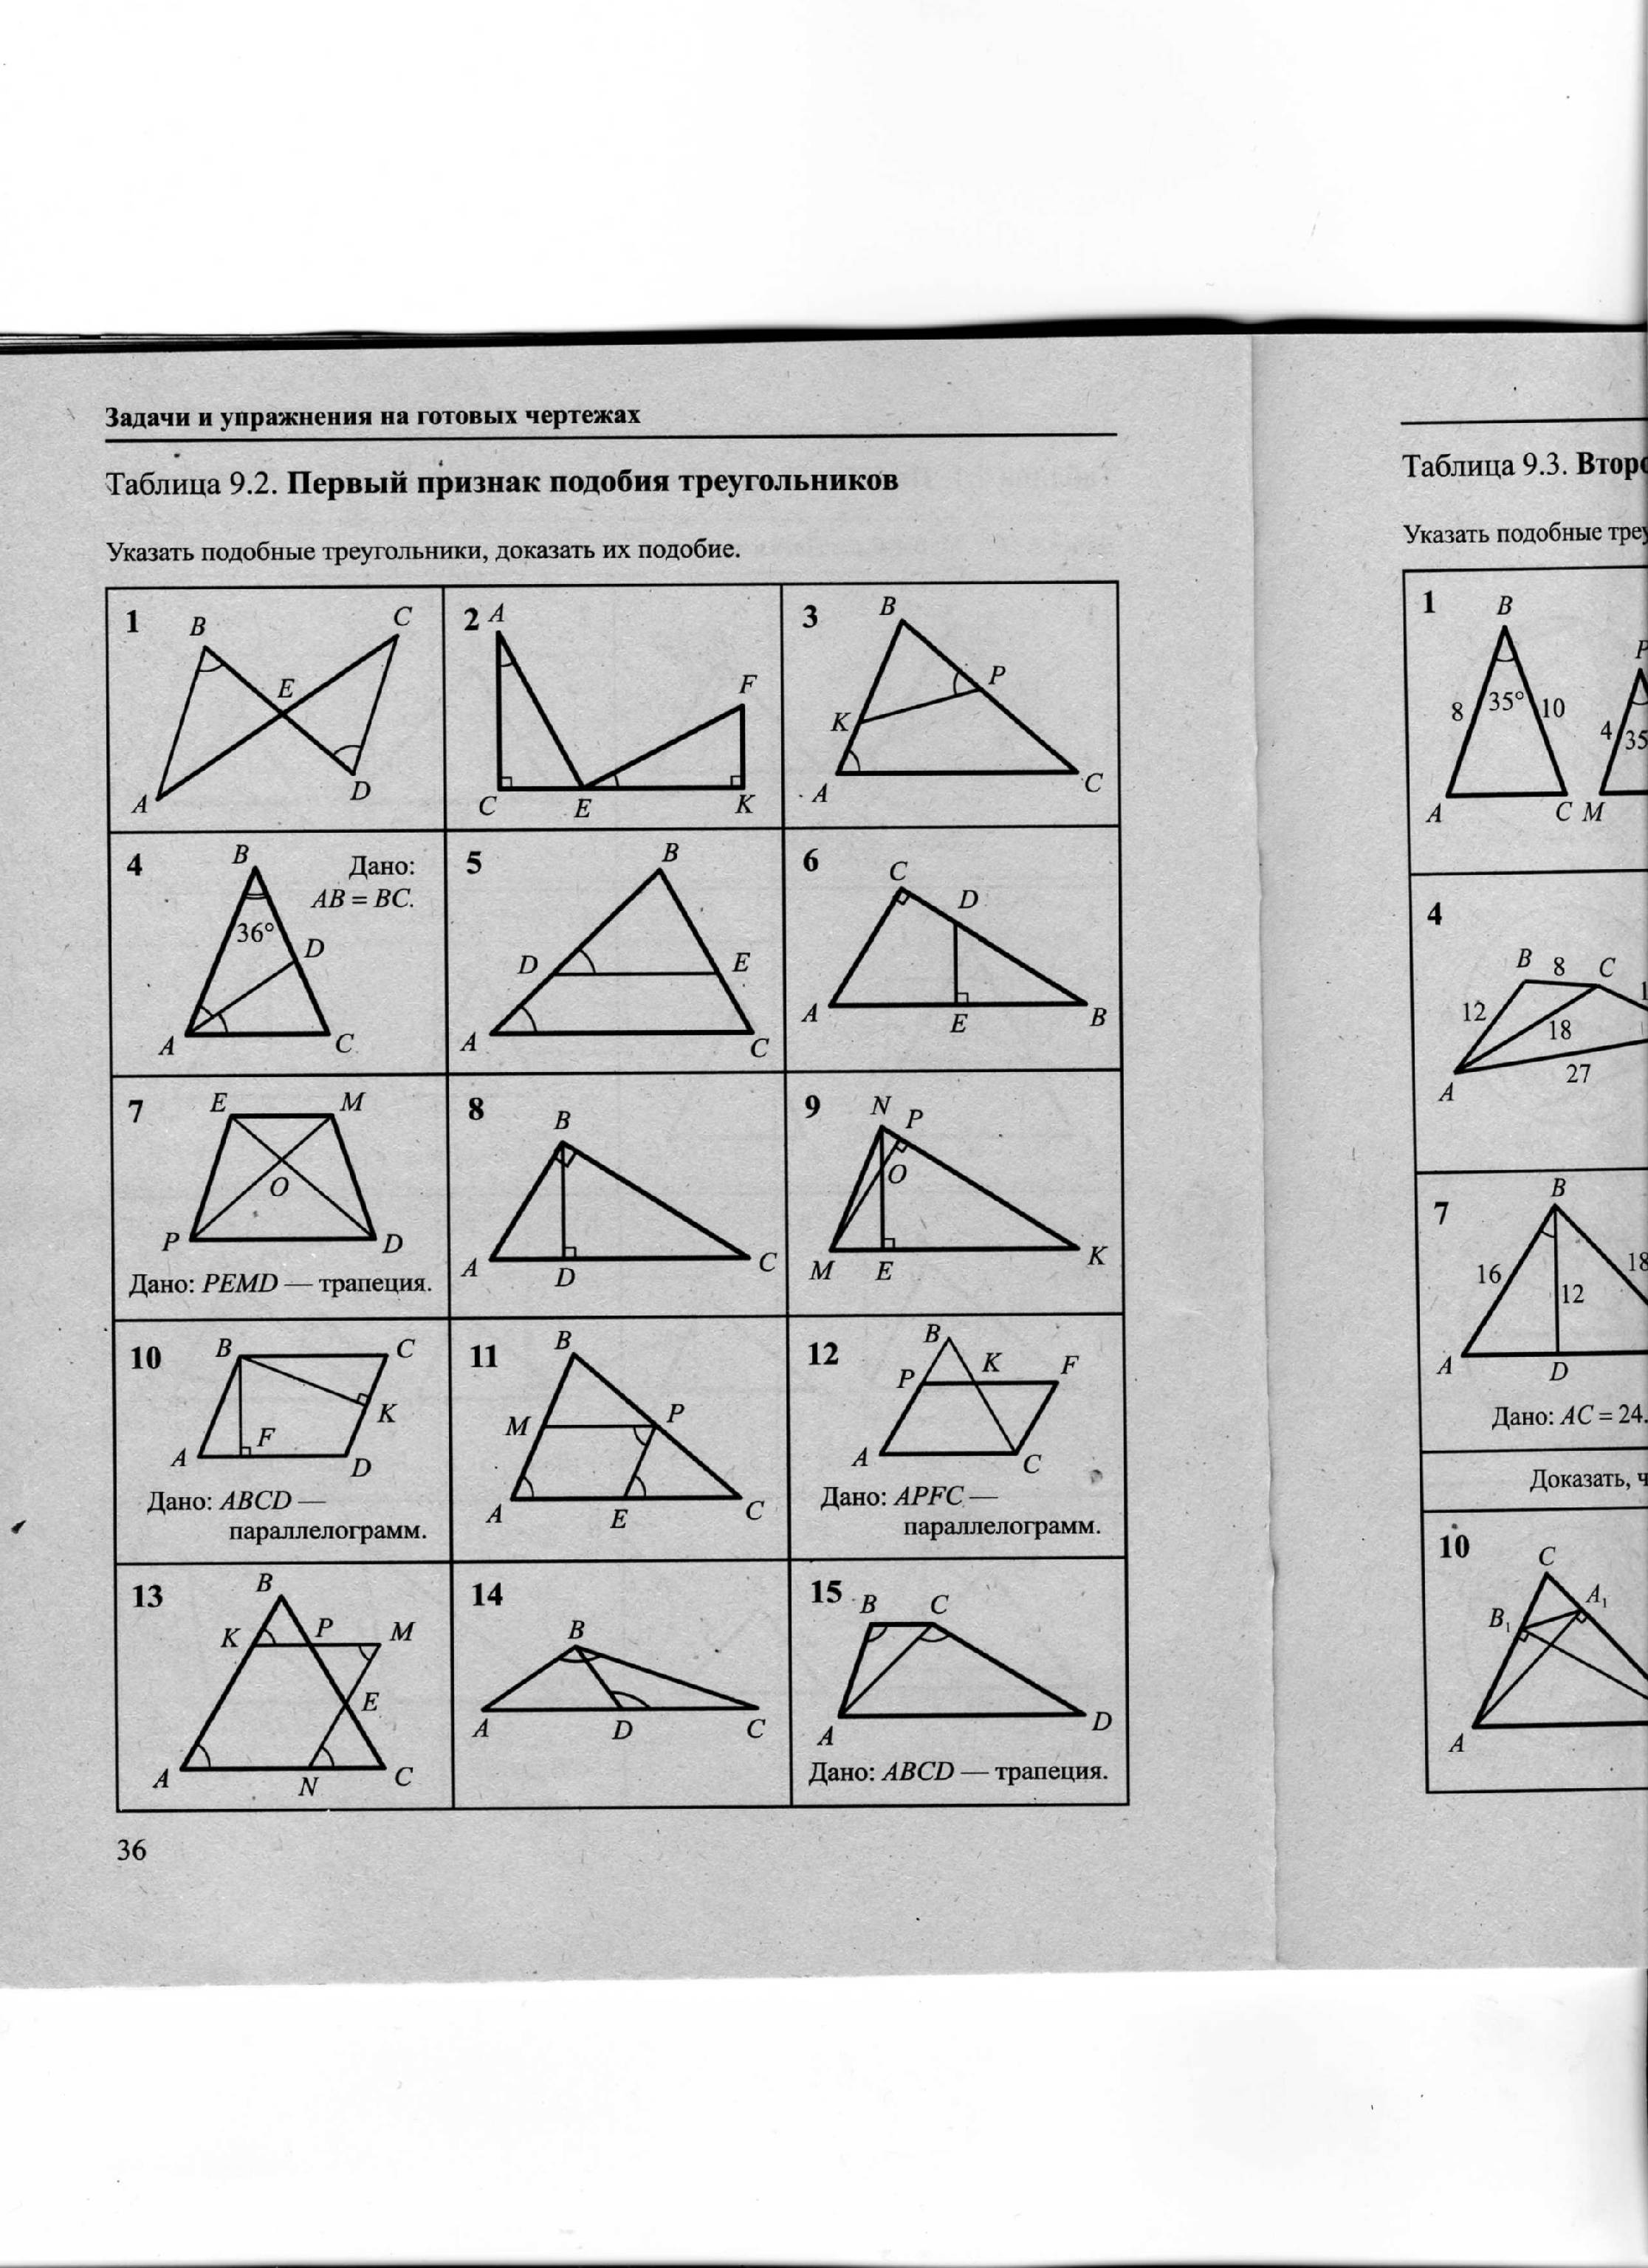 Таблица 9.3 второй и третий признаки. 9.2 Первый признак подобия треугольников. Первый признак подобия треугольников задачи по готовым чертежам. Рабинович таблица 9.2 первый признак подобия треугольников. Задачи на 1 признак подобия треугольников 8 класс на готовых чертежах.